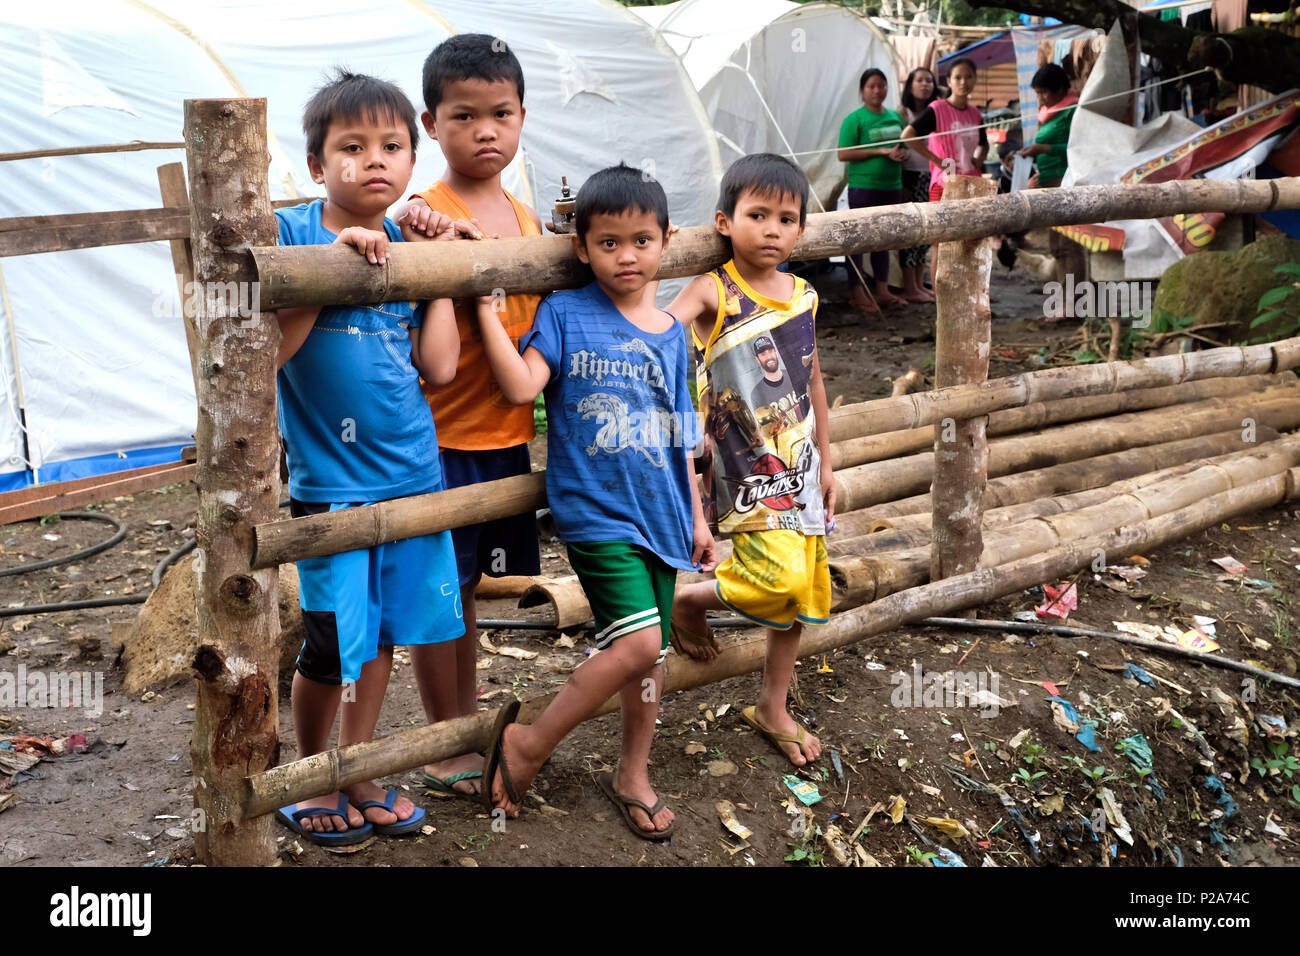 Christian IDP refugees in a tent camp on the outskirts of the ruined city Marawi, Mindanao Island, Philippines - Christliche Flüchtlinge in einem Zeltlager der zerstörten Stadt Marawi in einem Zeltlager am Rande der Stadt. Insel Mindanao, Philippinen Stock Photo